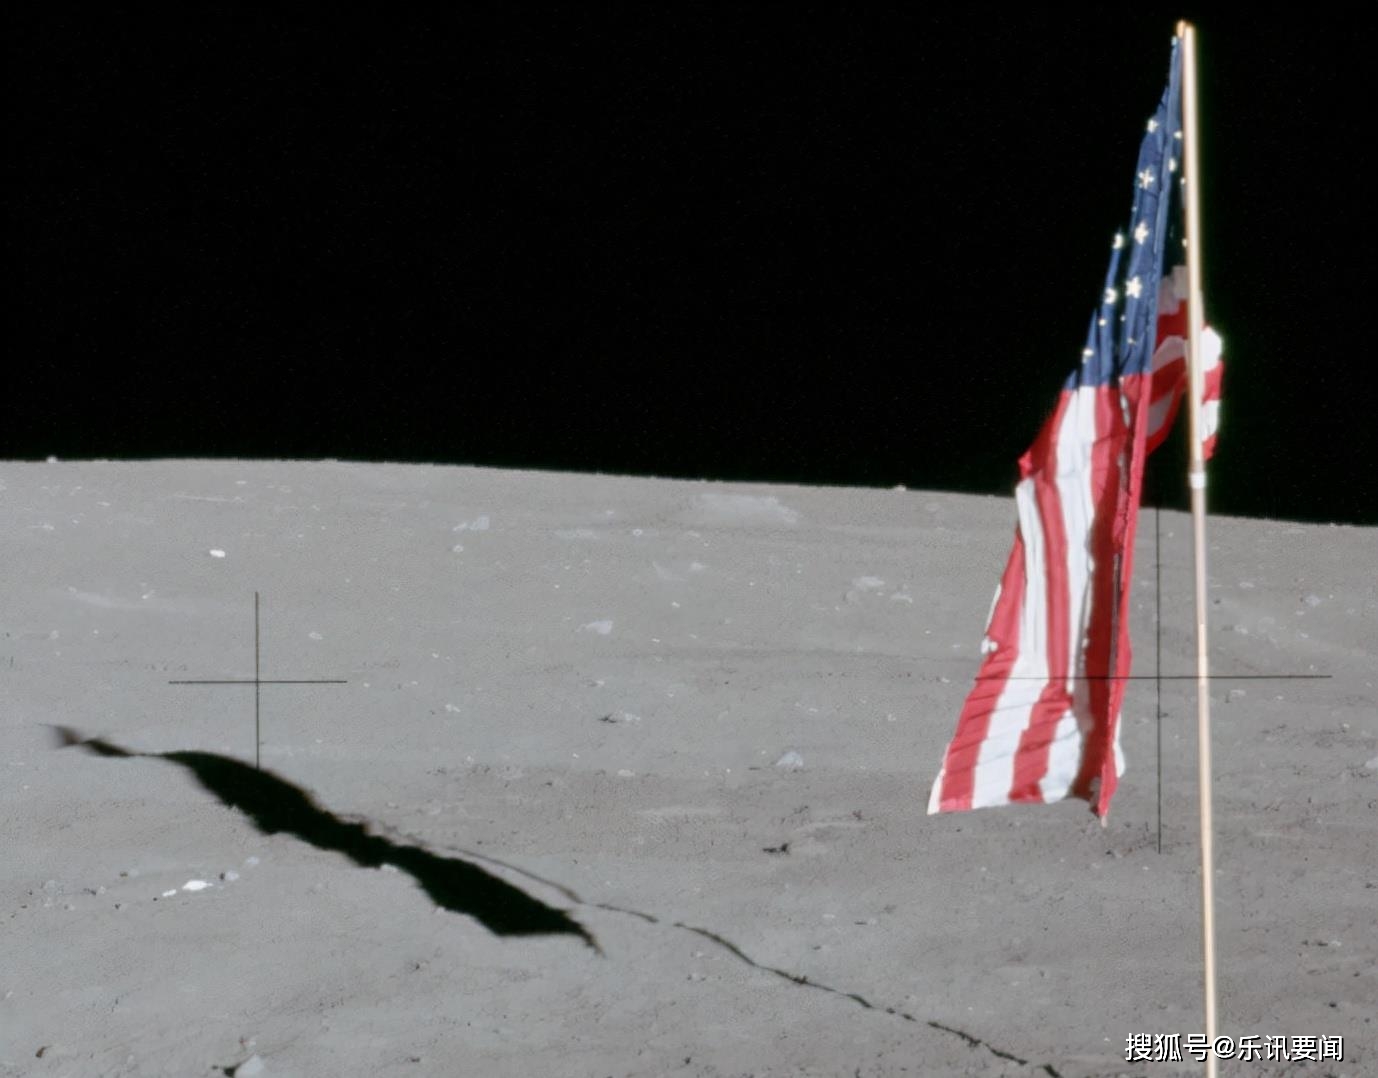 美国月球卫星,秘密偷拍嫦娥飞船登月画面,国旗都能看清_表面_中国